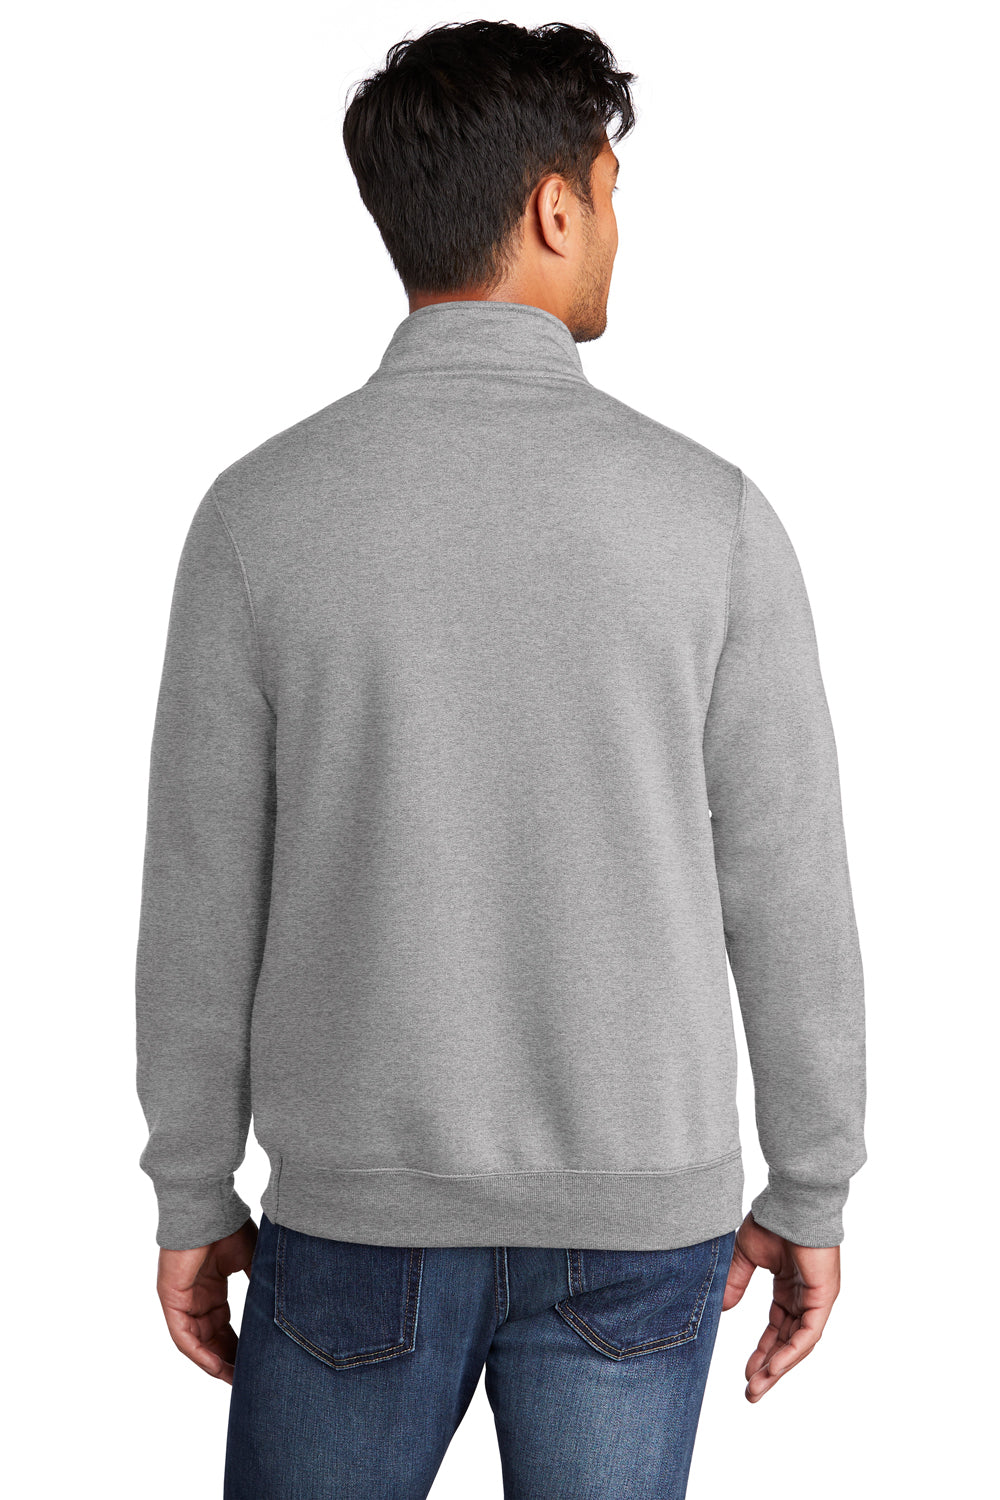 Port & Company Mens Core Fleece 1/4 Zip Sweatshirt Heather Grey Side